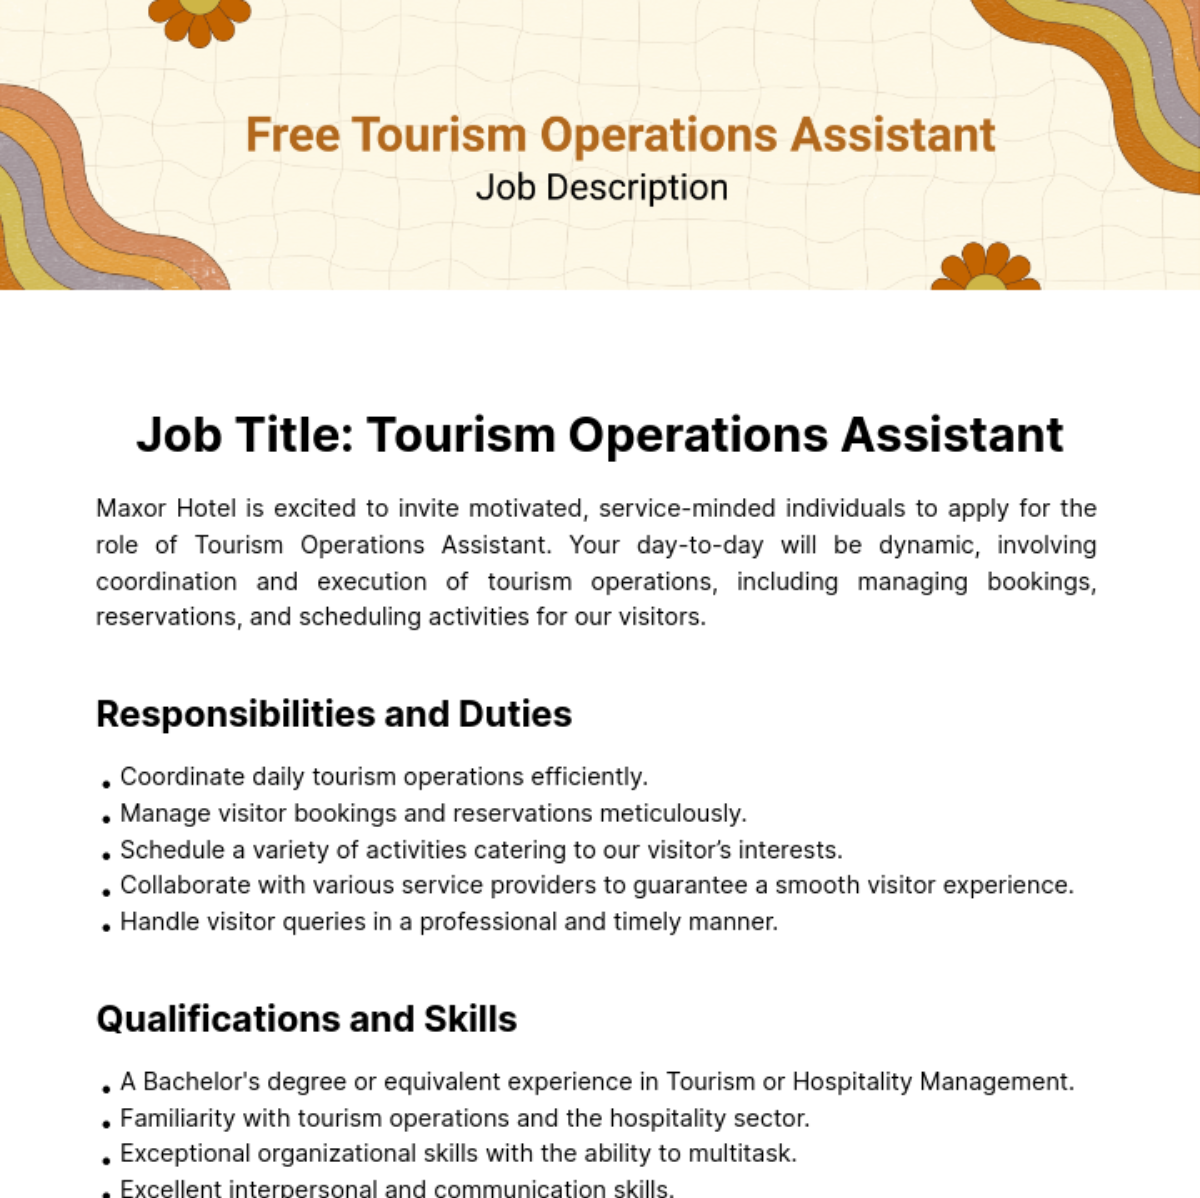 Free Tourism Operations Assistant Job Description Template